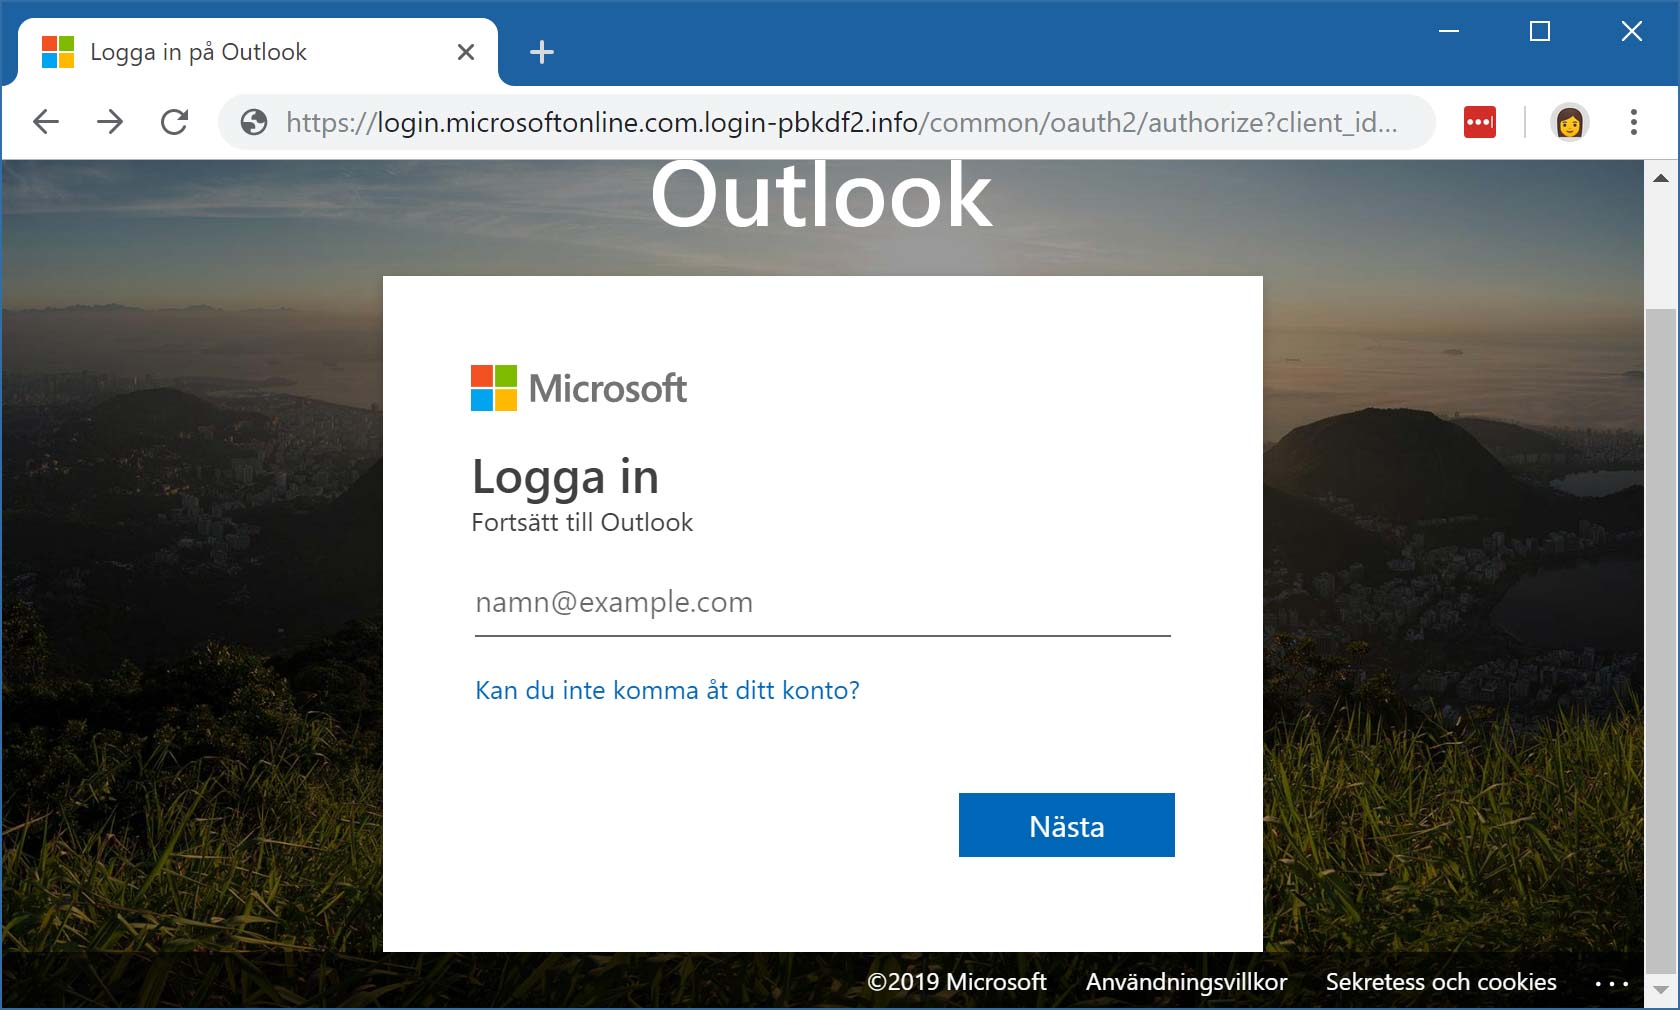 Exempel på nätfiskande inloggningsruta för Microsoft Outlook i Office 365.